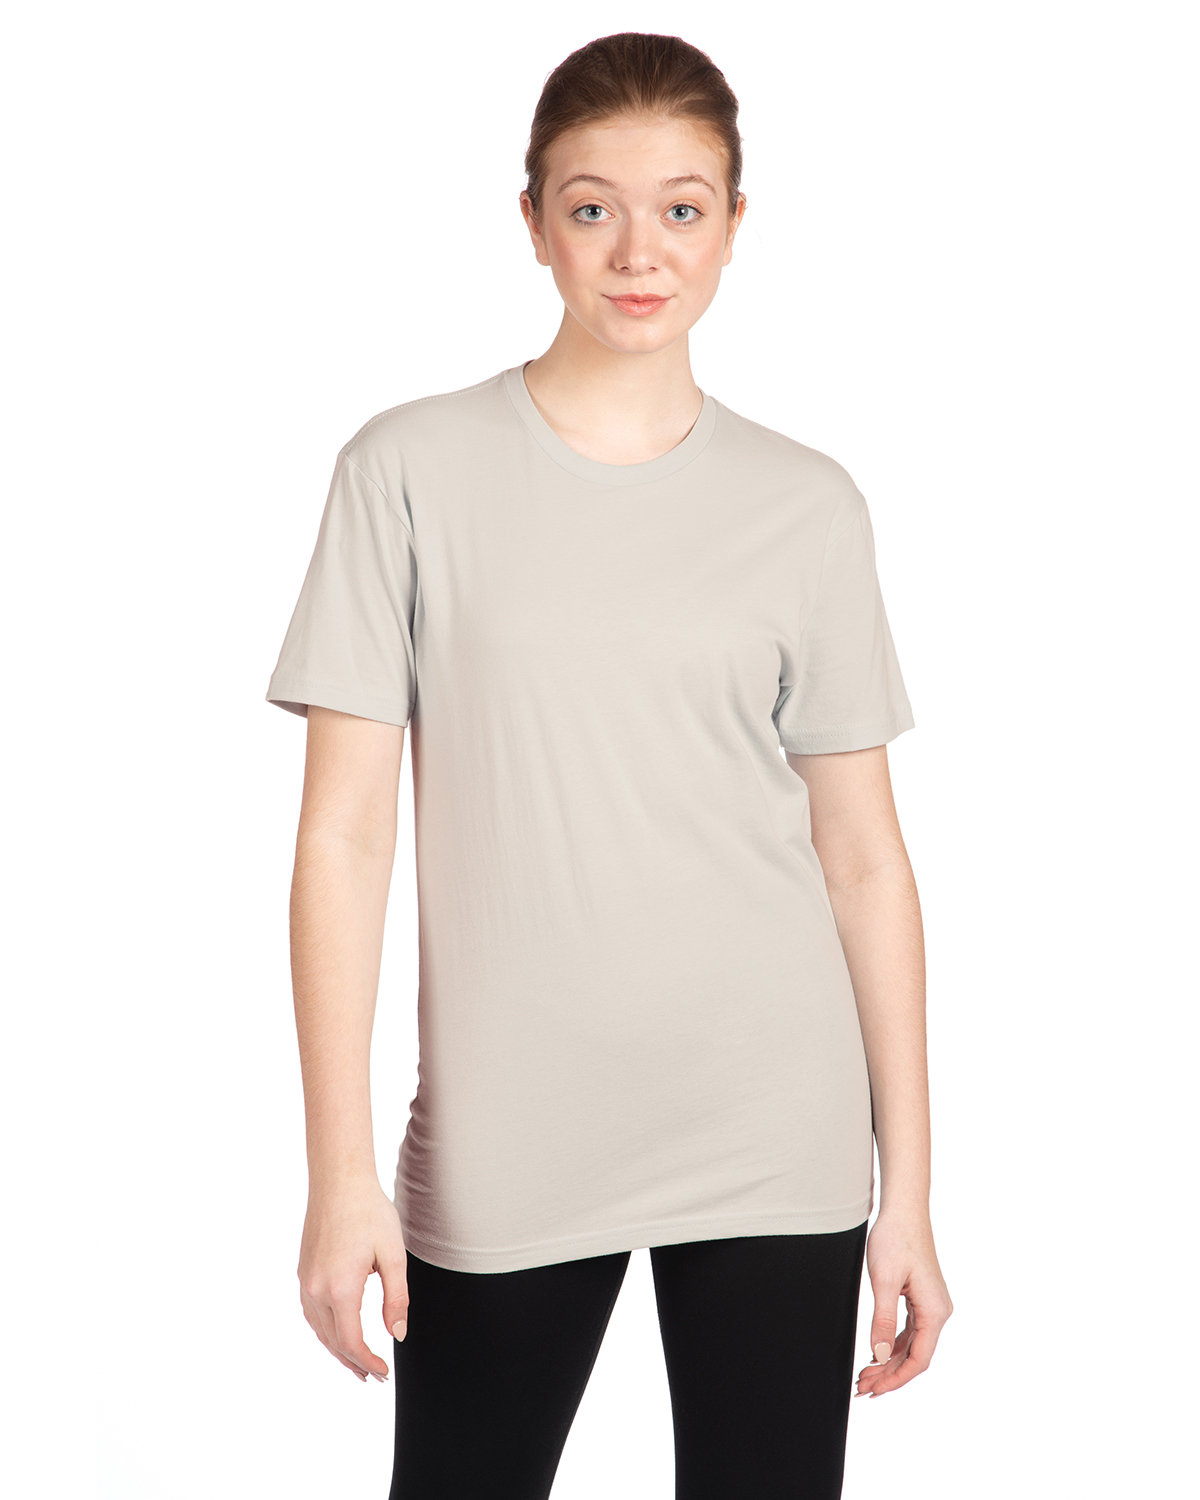 Unisex Cotton T-Shirt-